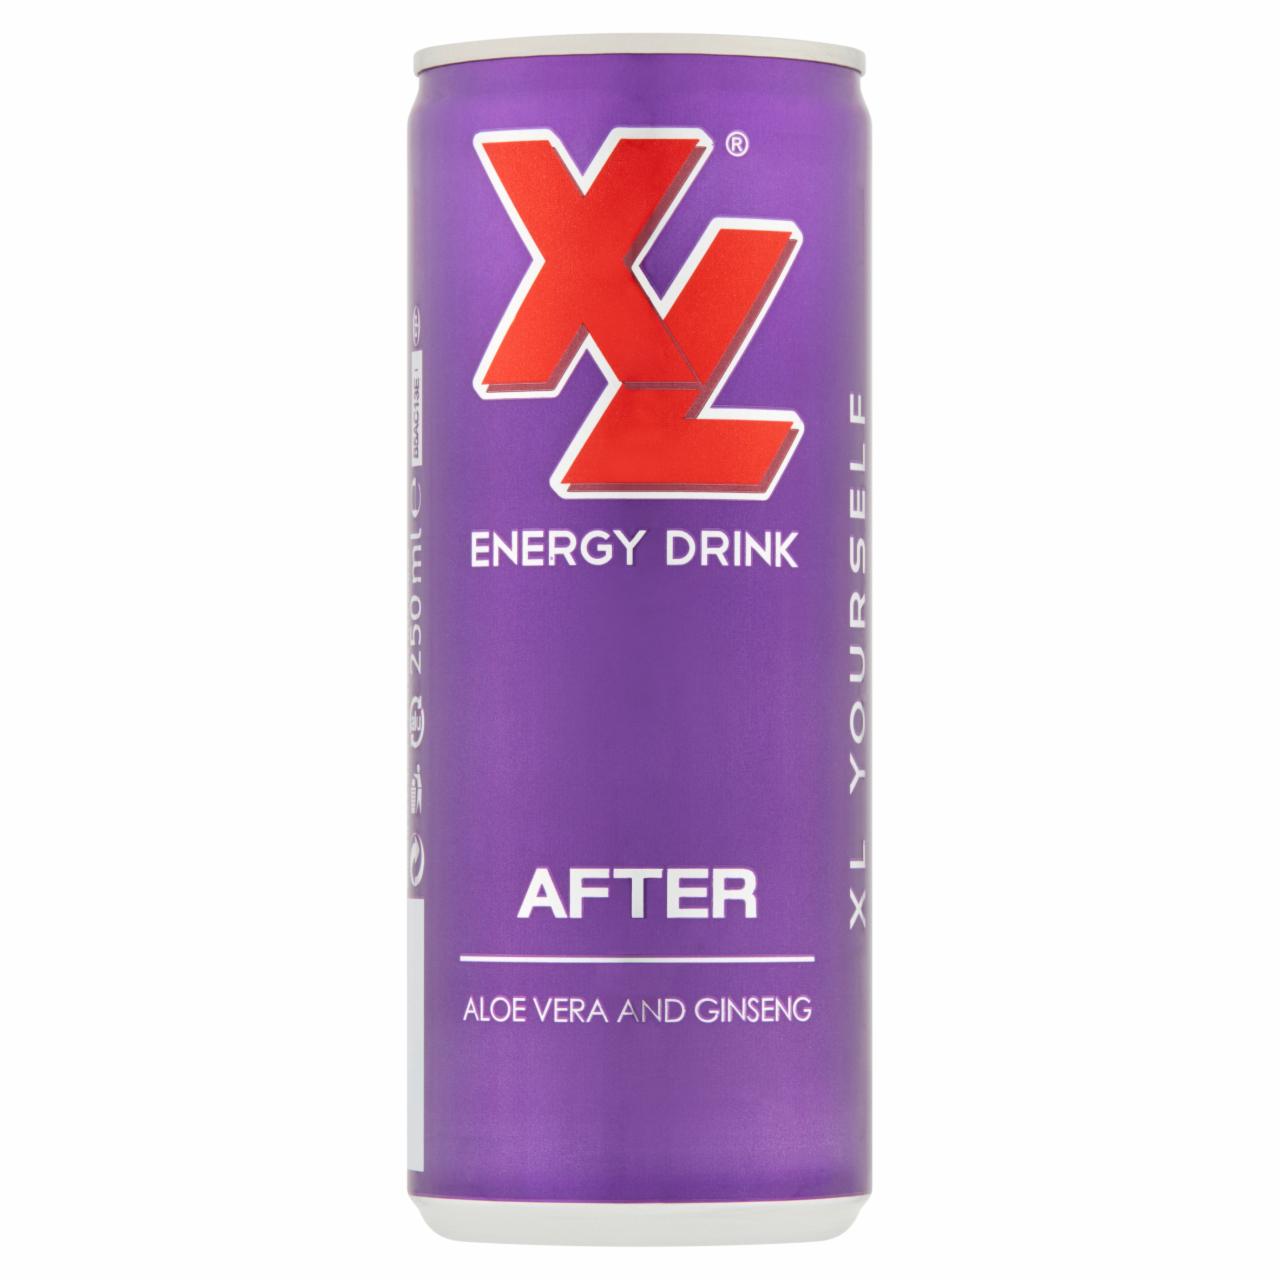 Zdjęcia - XL Energy Drink After Napój gazowany 250 ml